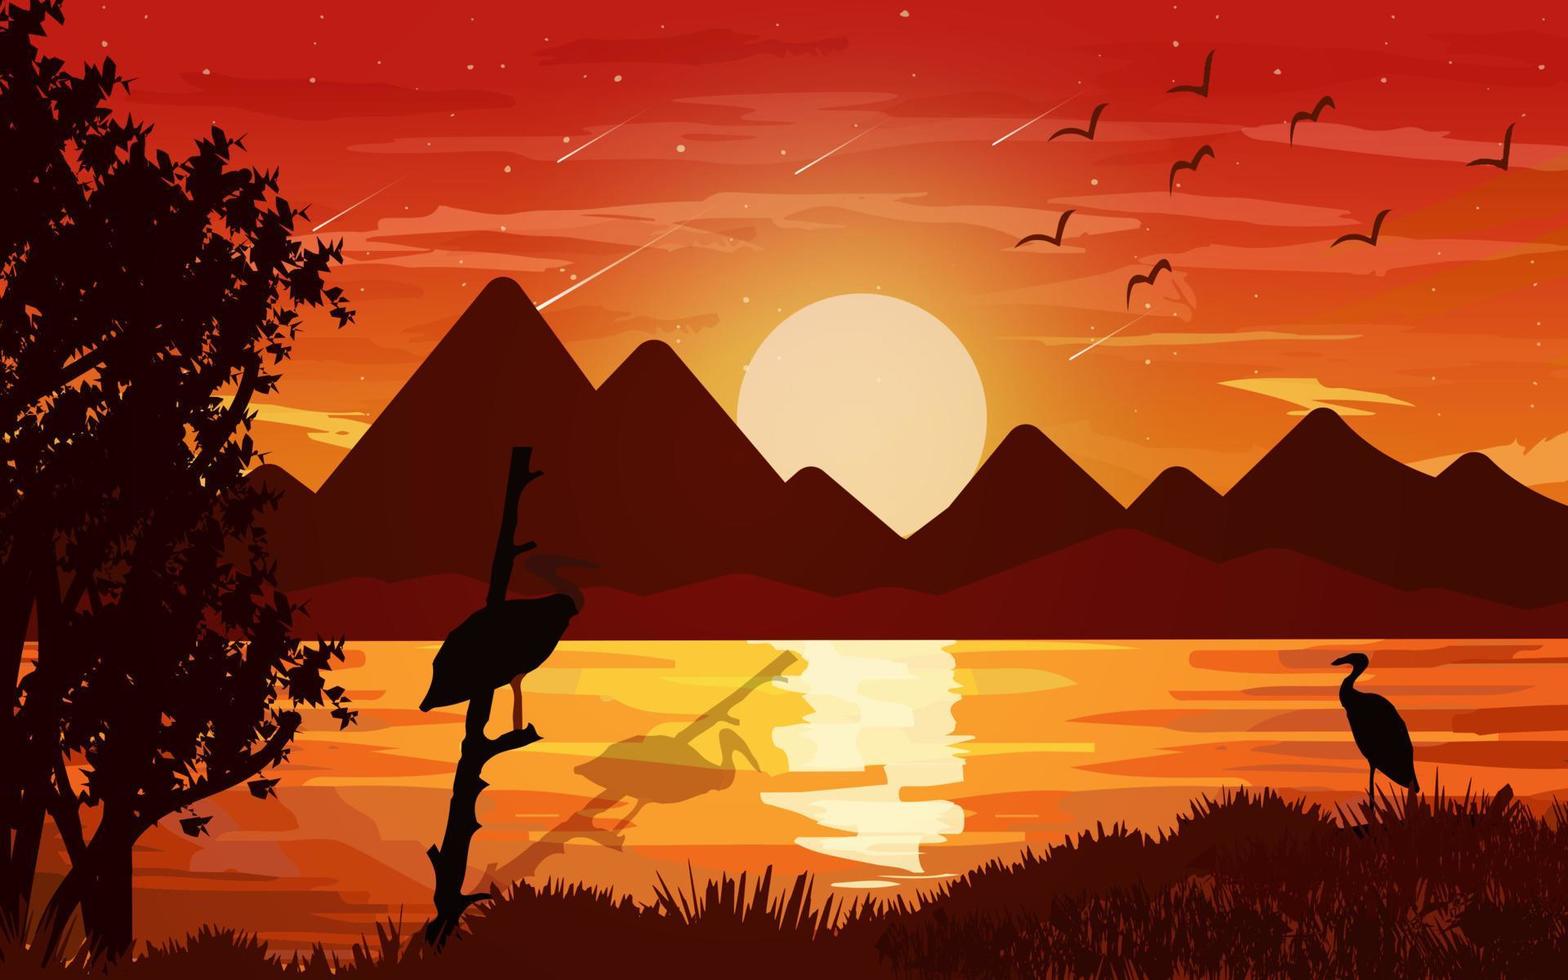 Sonnenuntergangsszene im Wald. leuchtender waldhimmel mit bergen und vögeln landschaft hintergrund illustration berge vektor